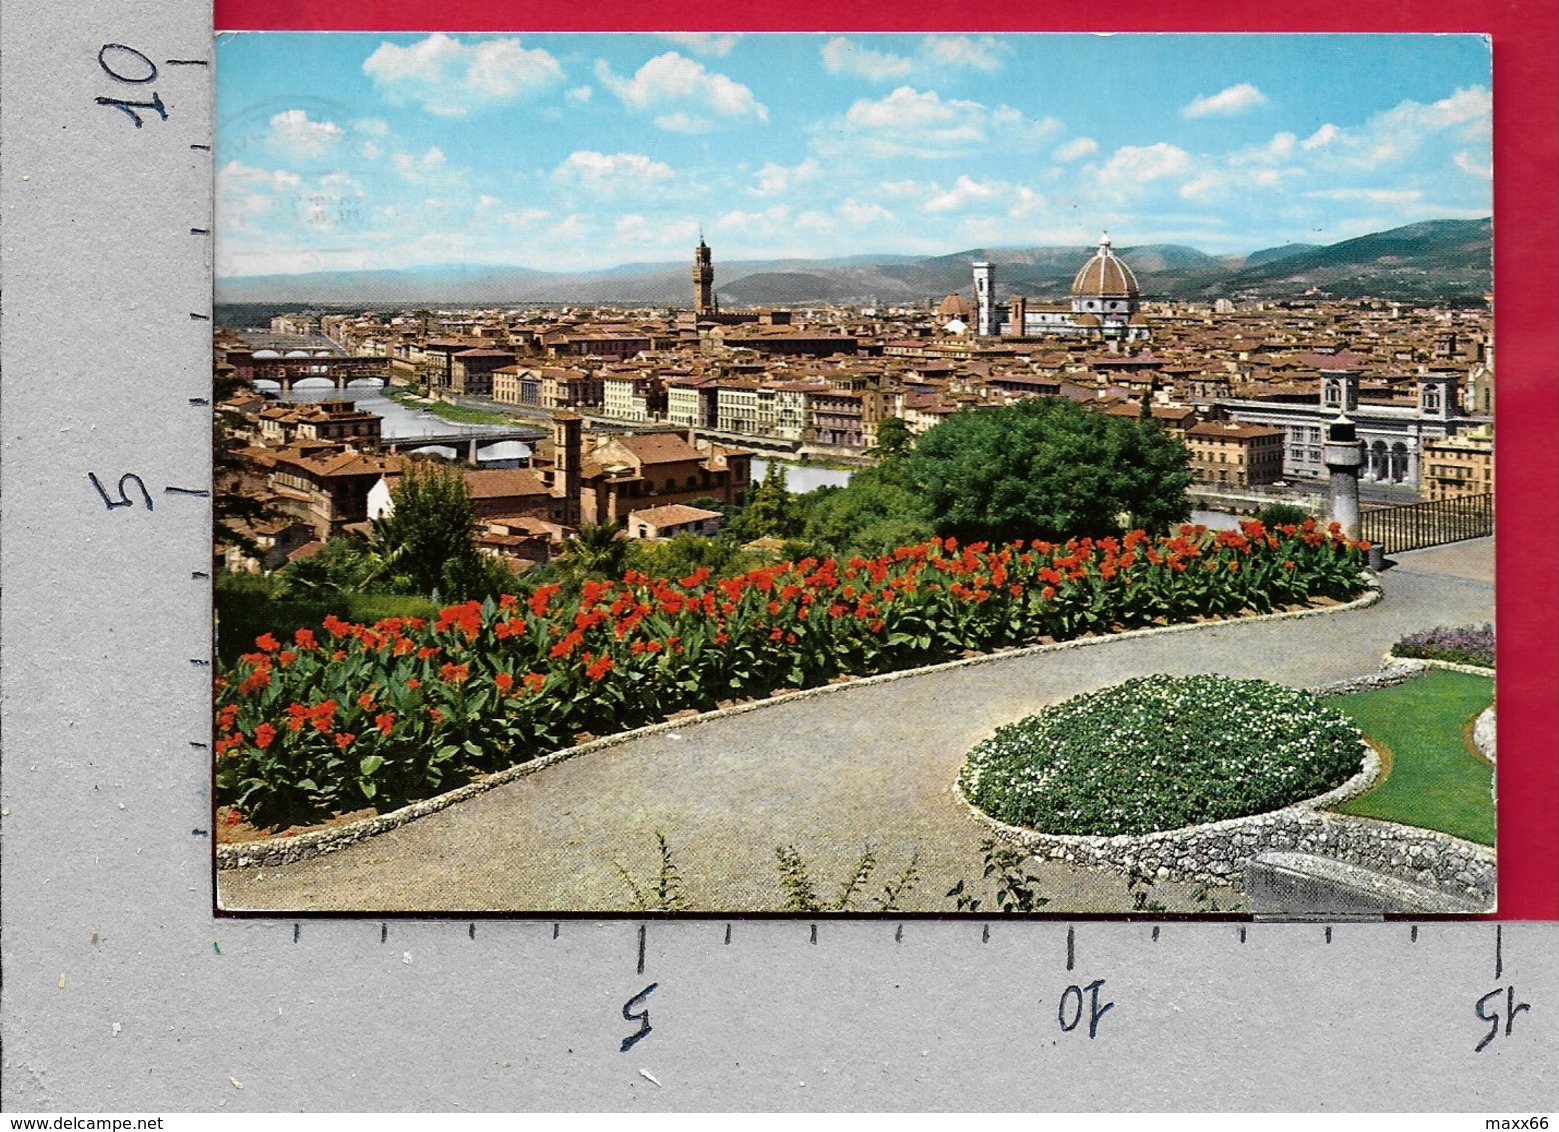 CARTOLINA VG ITALIA - FIRENZE - Una Veduta Panoramica - 10 X 15 - ANN. 1979 - Firenze (Florence)